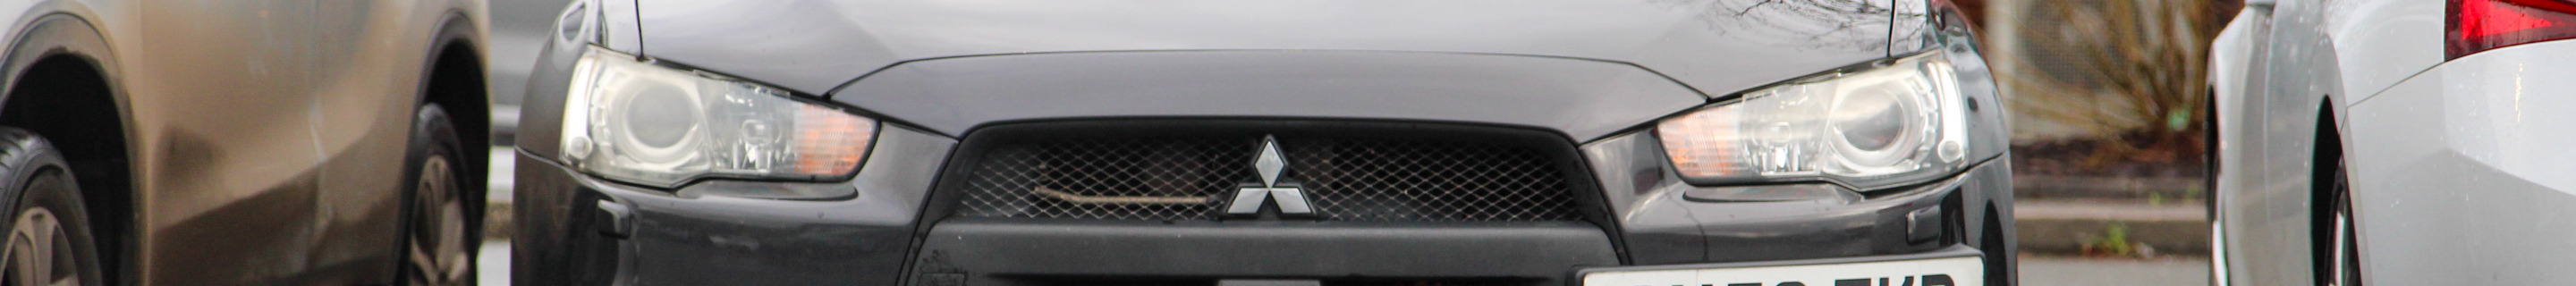 Mitsubishi Lancer Evolution X FQ-300 SST